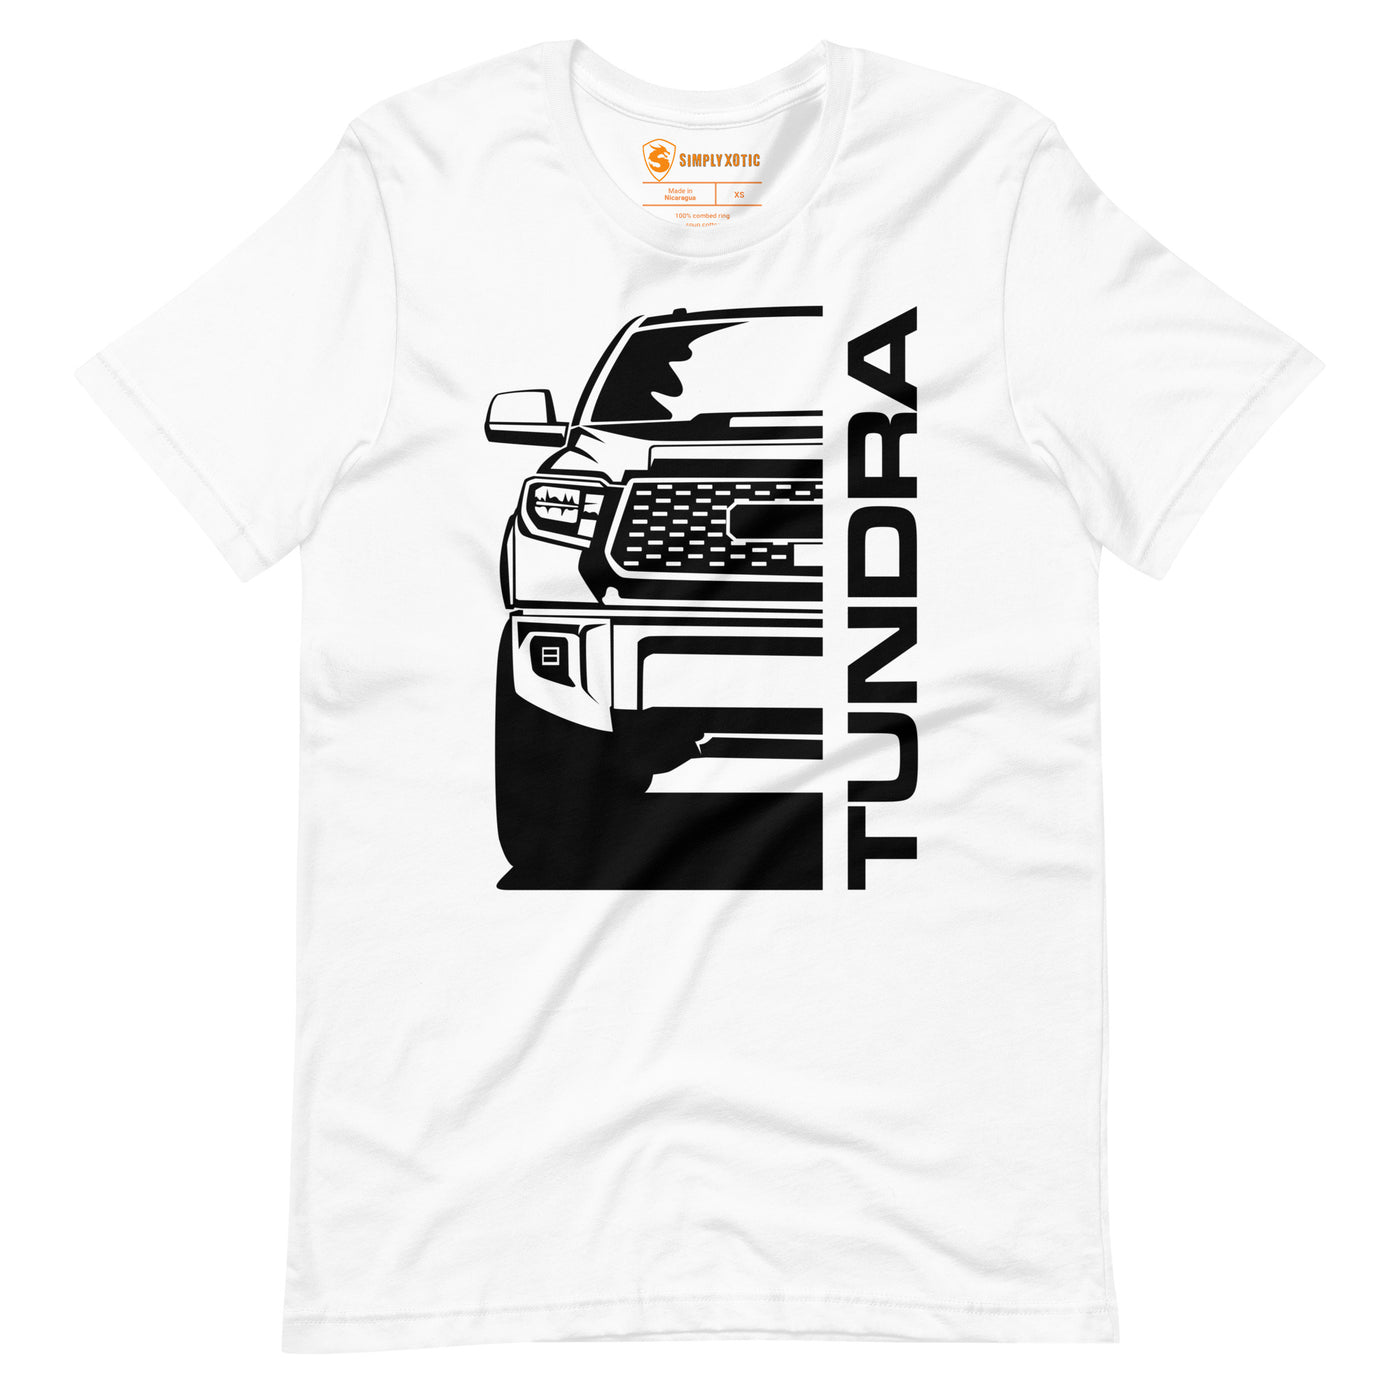 Tundra T-shirt